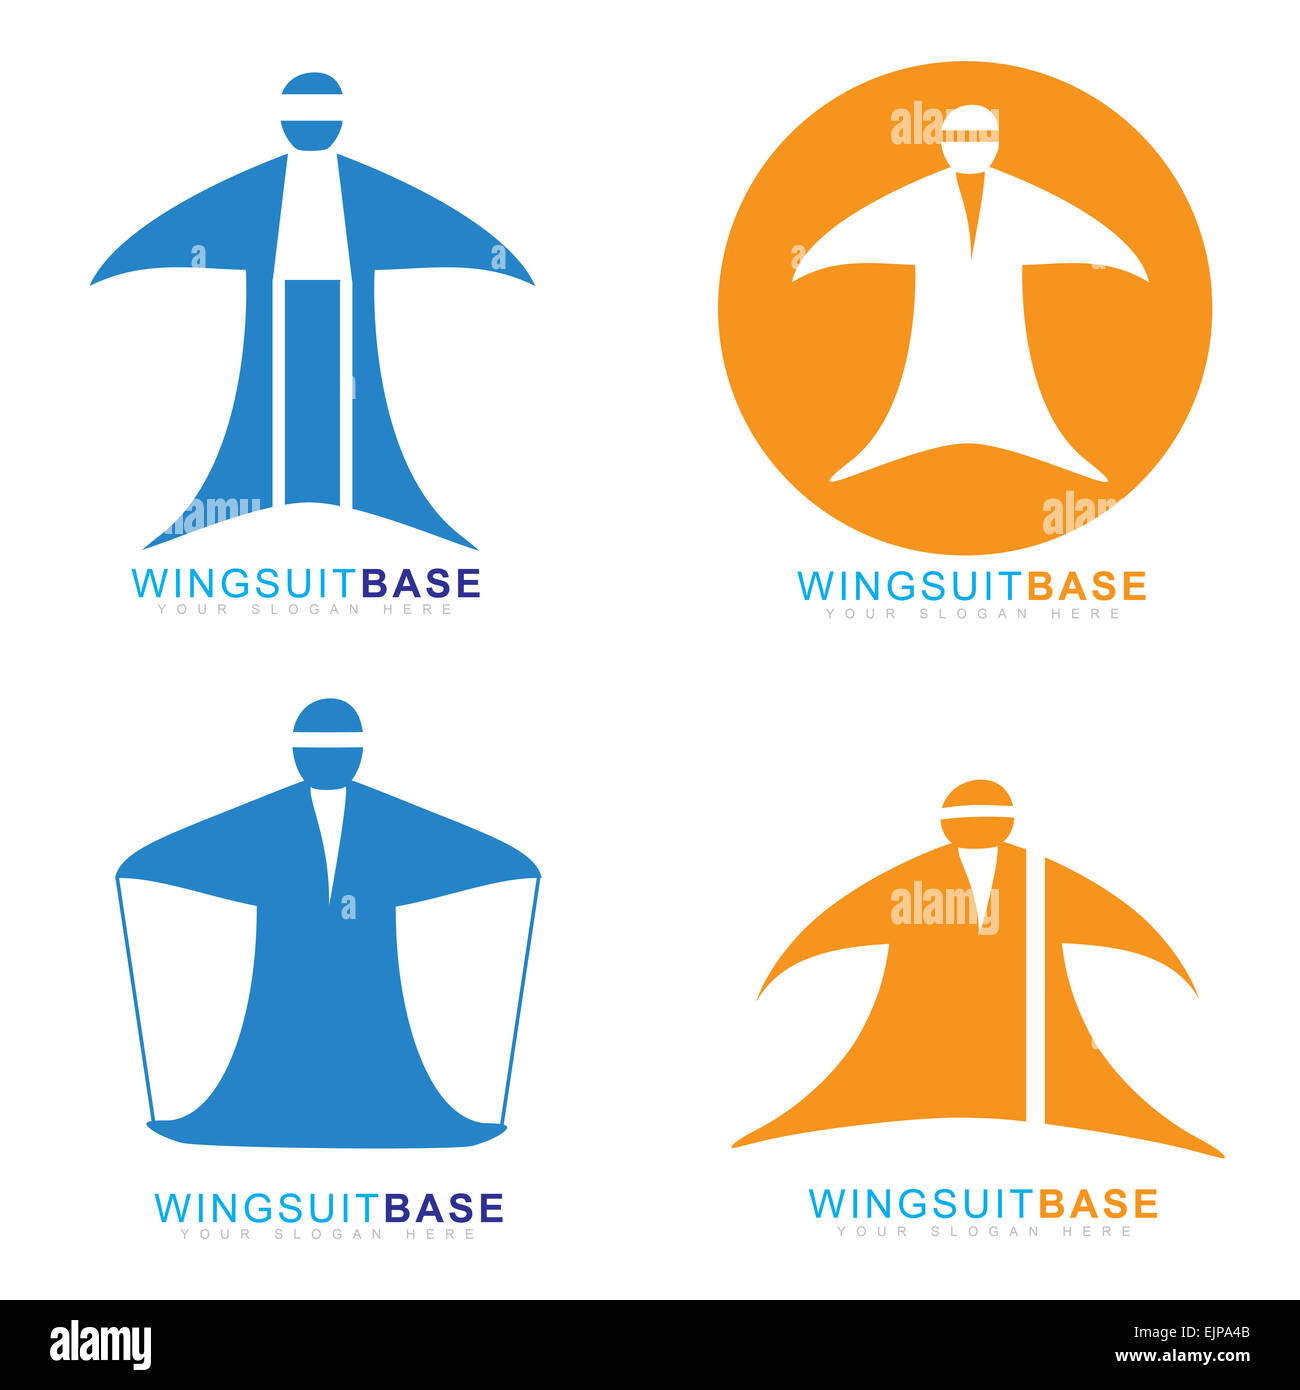 Vektor-Logo Vorlage des Wingsuit Extremsport Basejumpen Stockfoto